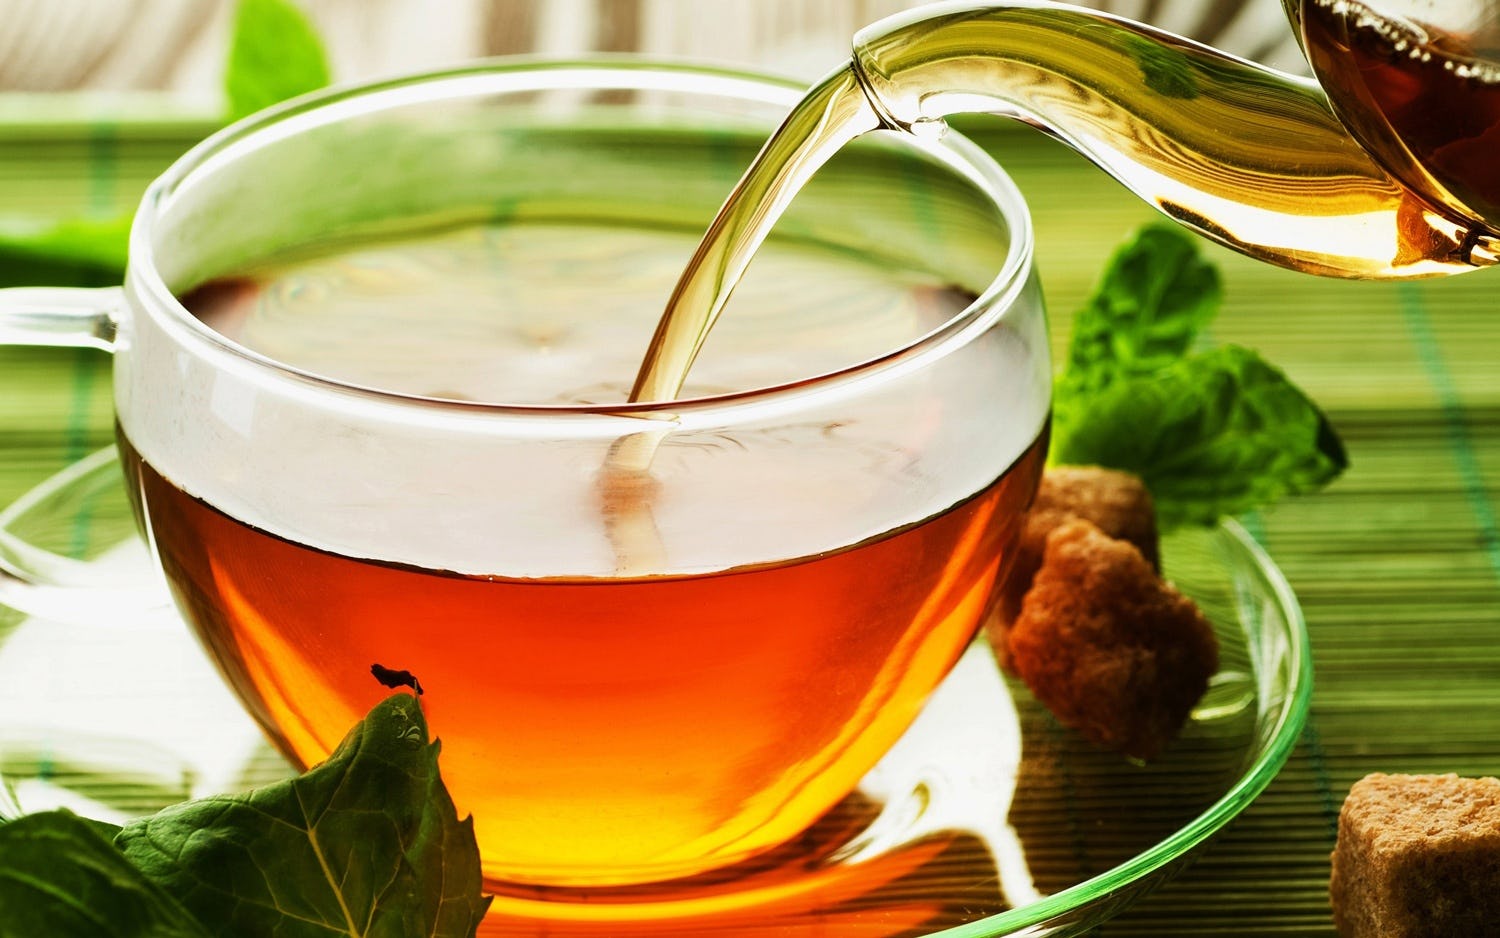 Ceylon Tea to expand EU market through GI Certificate